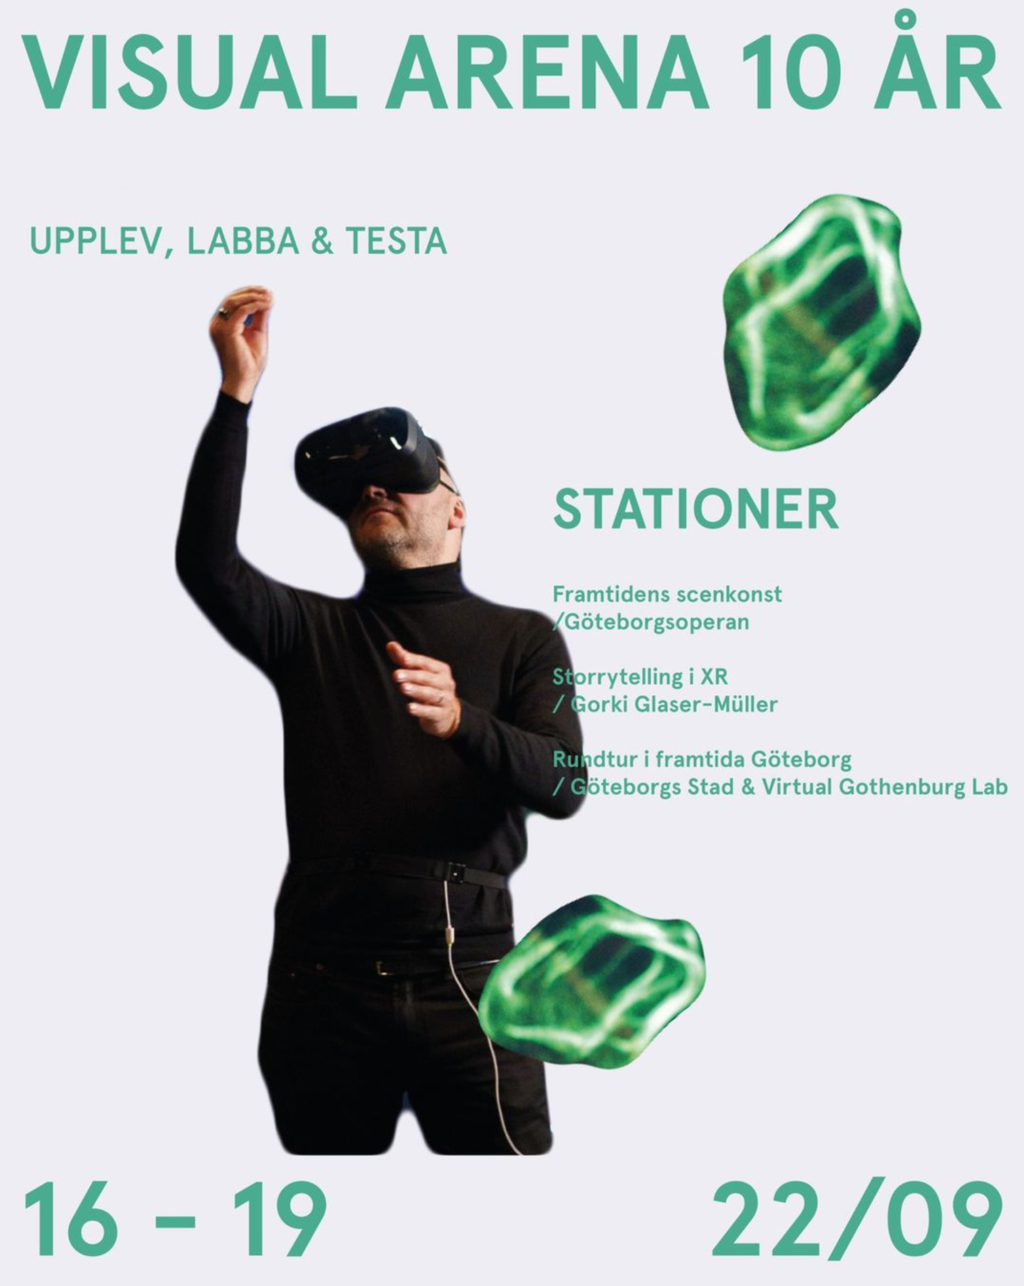 En poster av Visual Arena 10 år. En man som håller på att labba i VR synd på affischen, sedan står det titel, datum ch tid! 